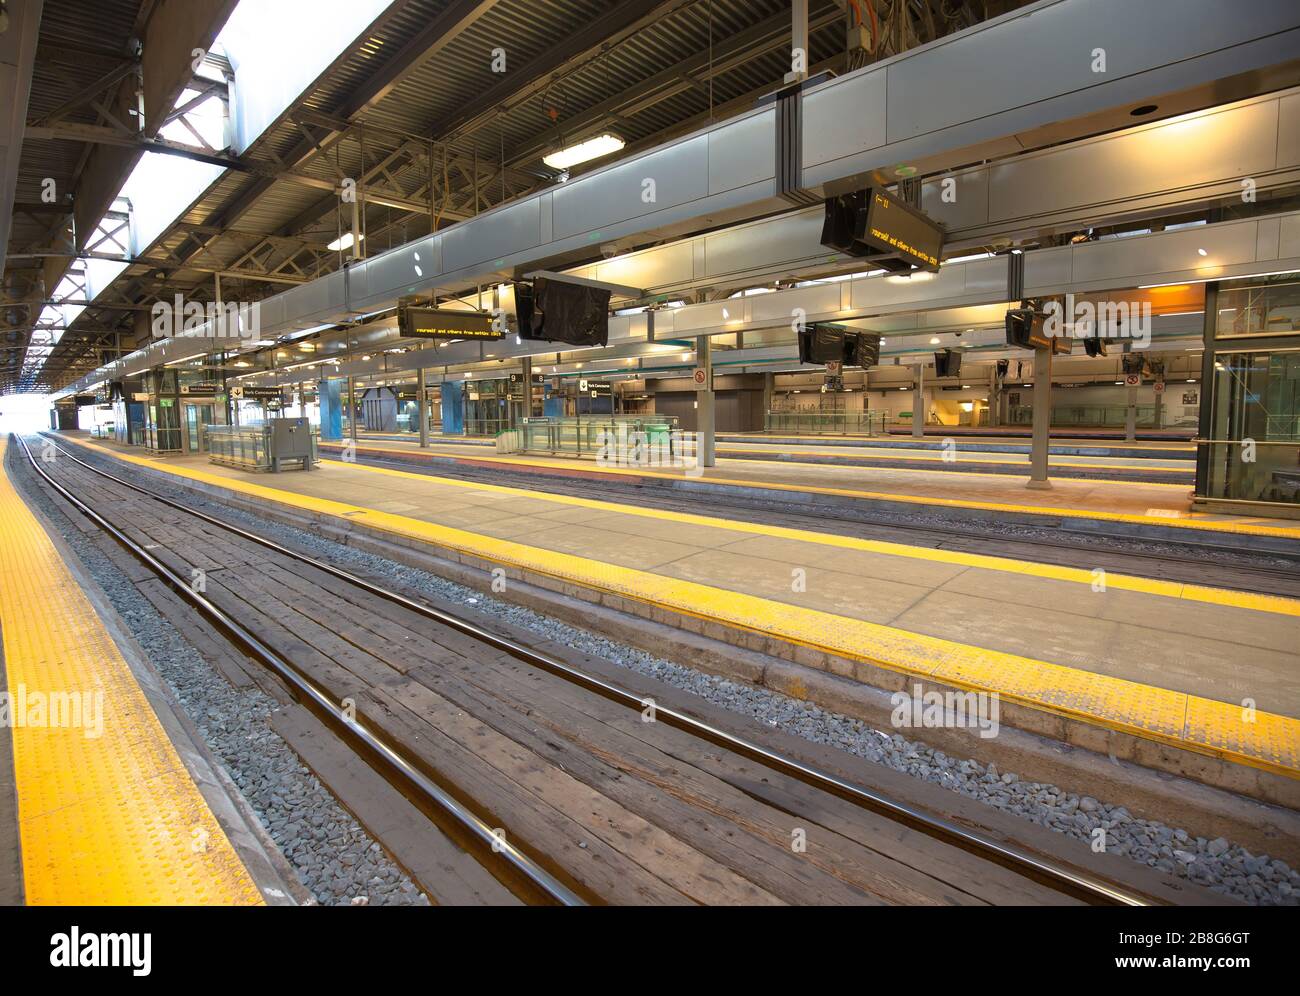 Toronto, Canadá-20 de marzo de 2020: Estación ferroviaria de la Unión vacía en Toronto durante la pandemia de Covid-19 (coronavirus) con restricciones de viaje implementadas Foto de stock